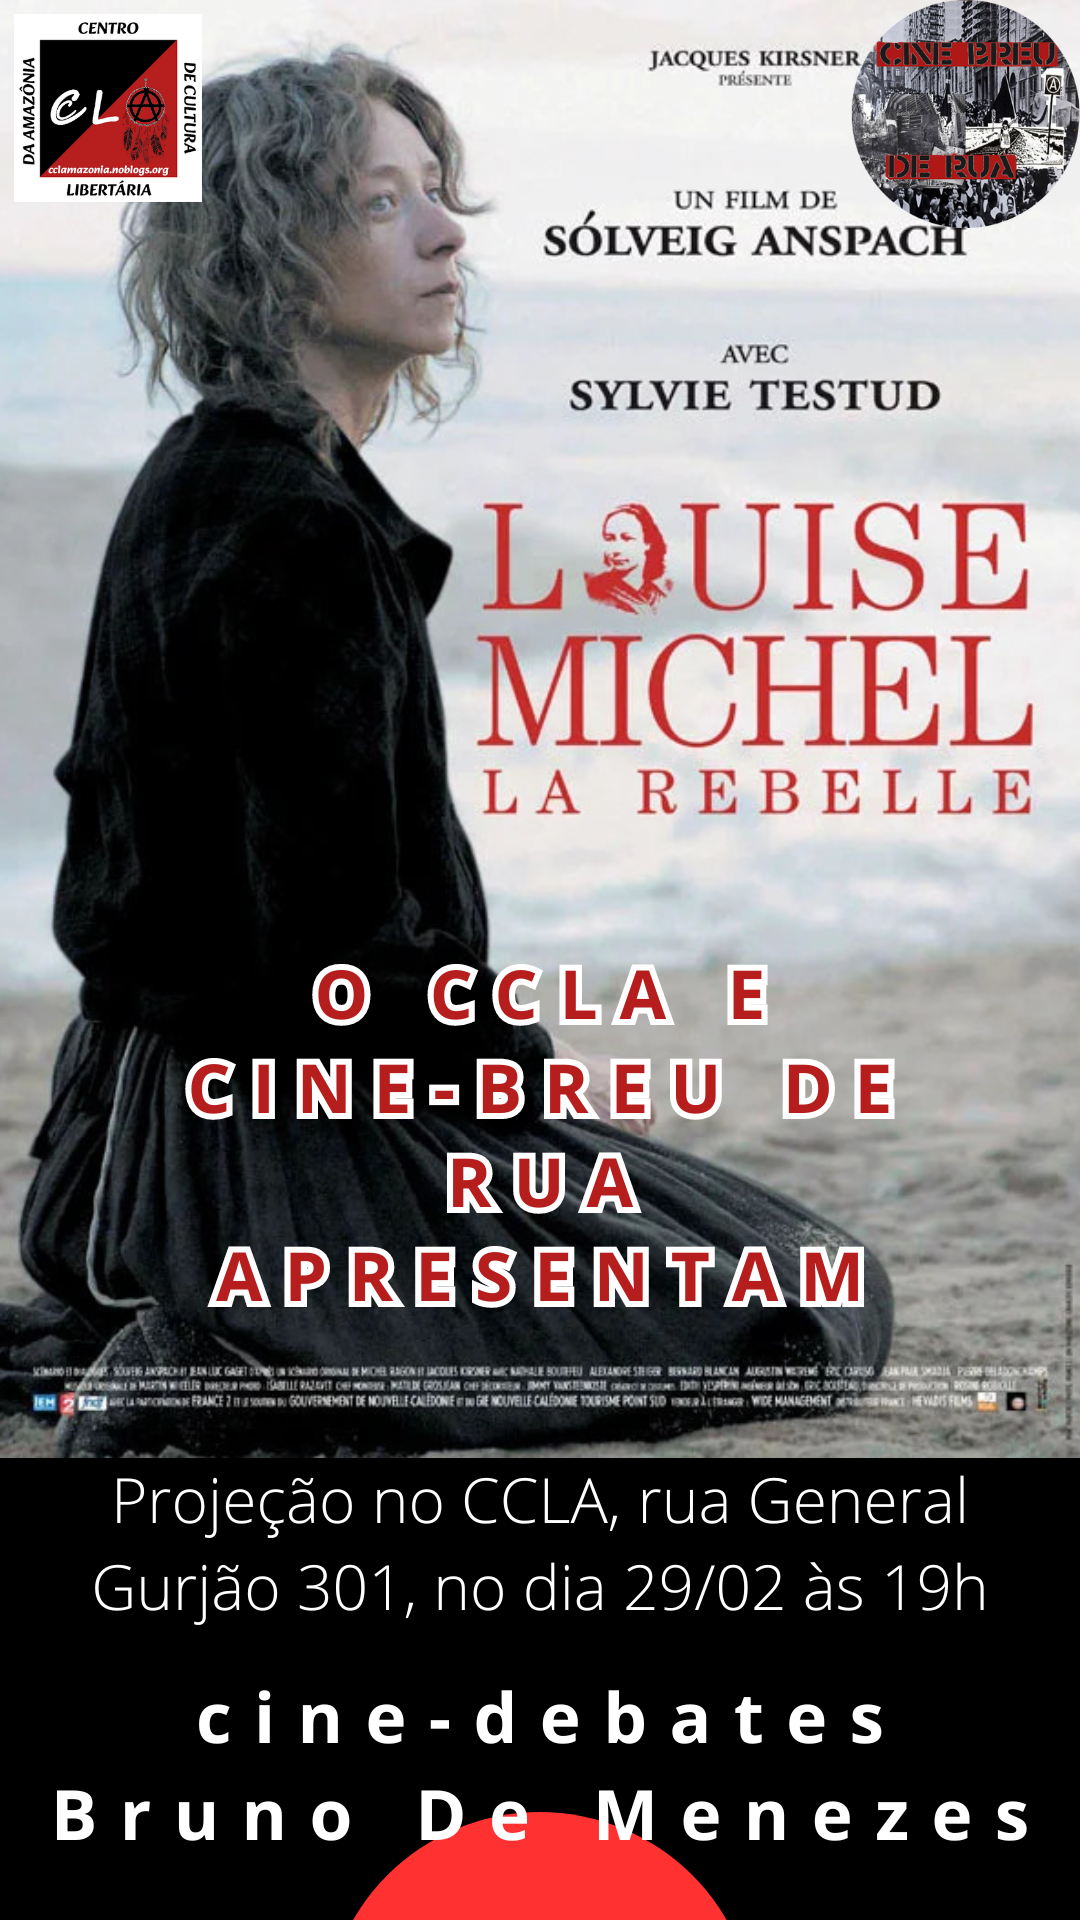 Projeção do filme Louise Michel (França, 2009) no cine-debate do CCLA